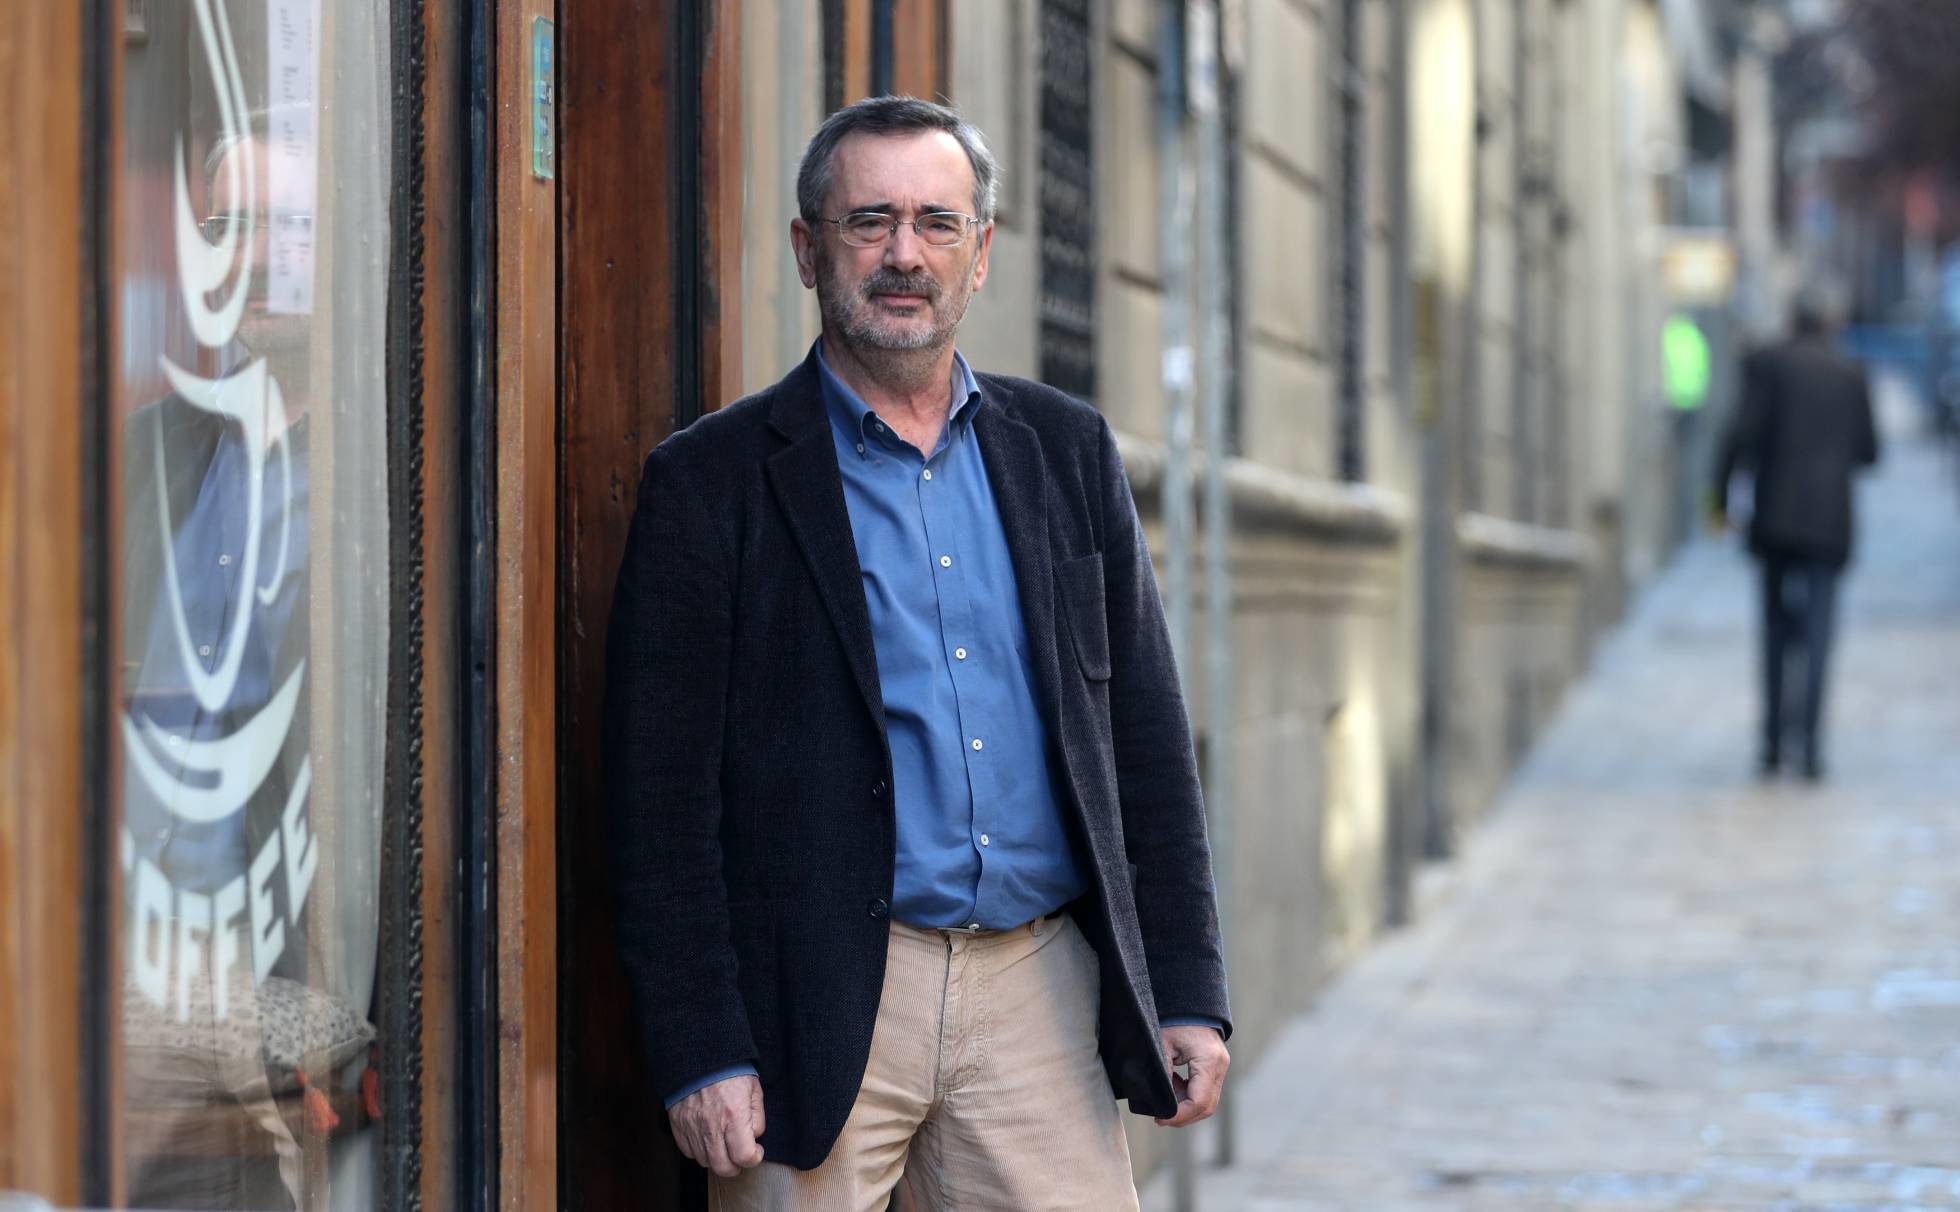 El diputado socialista Manuel Cruz en Madrid en 2017.